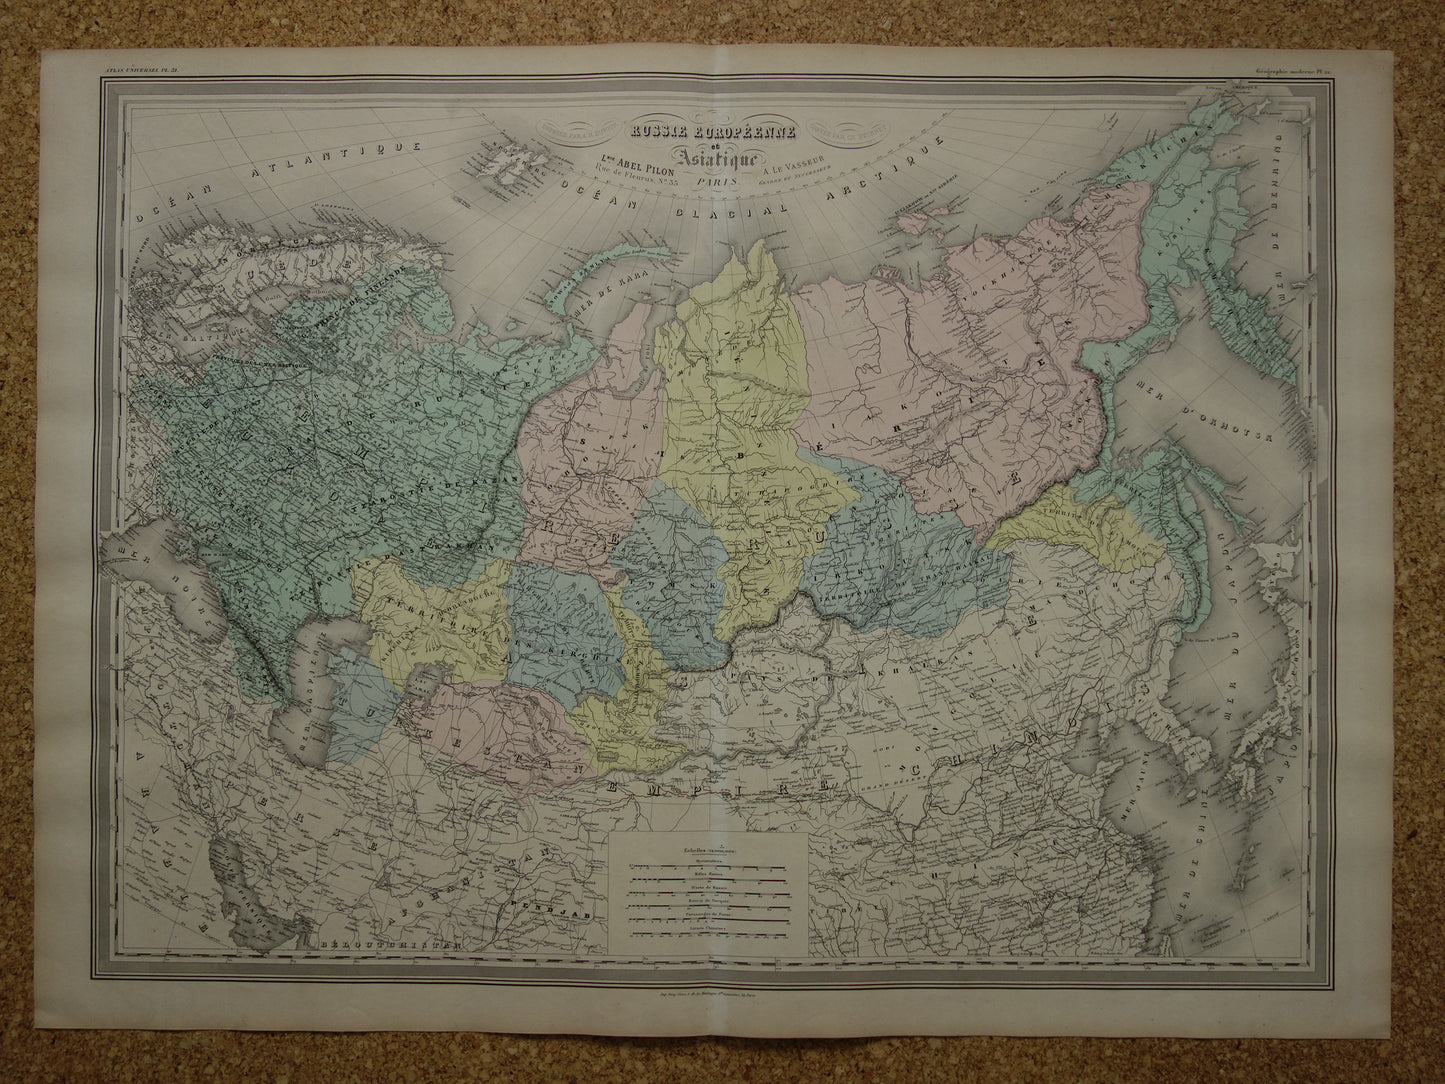 Oude landkaart van Rusland Zeer grote kaart Europees en Aziatisch deel Russische Rijk uit 1880 Originele vintage kaarten